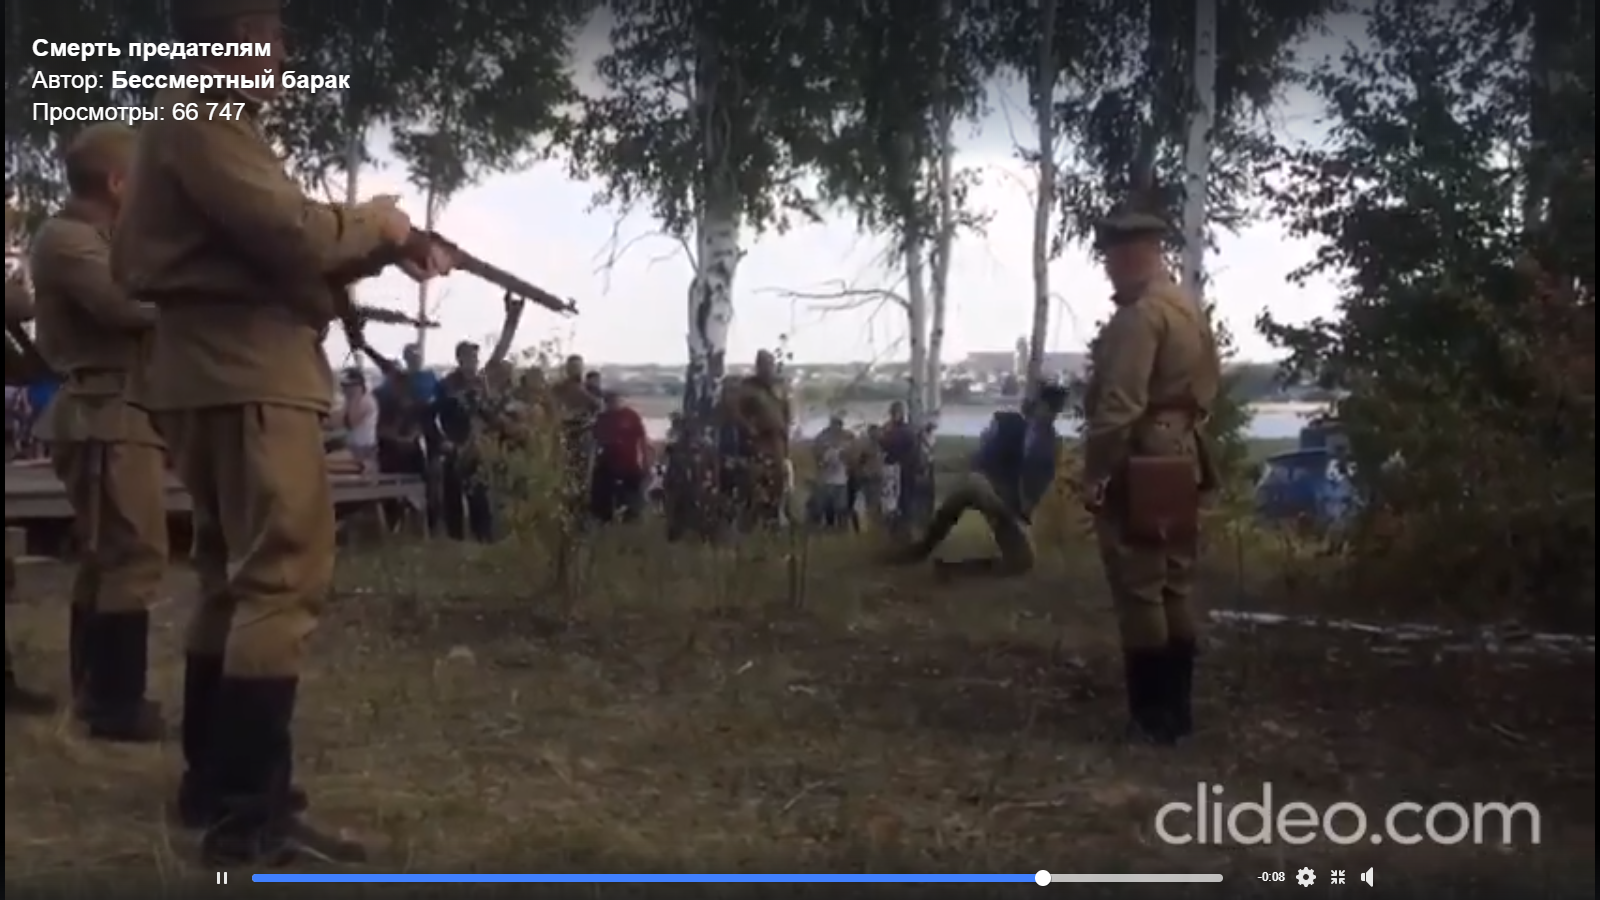 Видео дня: на Алтае показательно «расстреляли» врага народа под смех зрителей